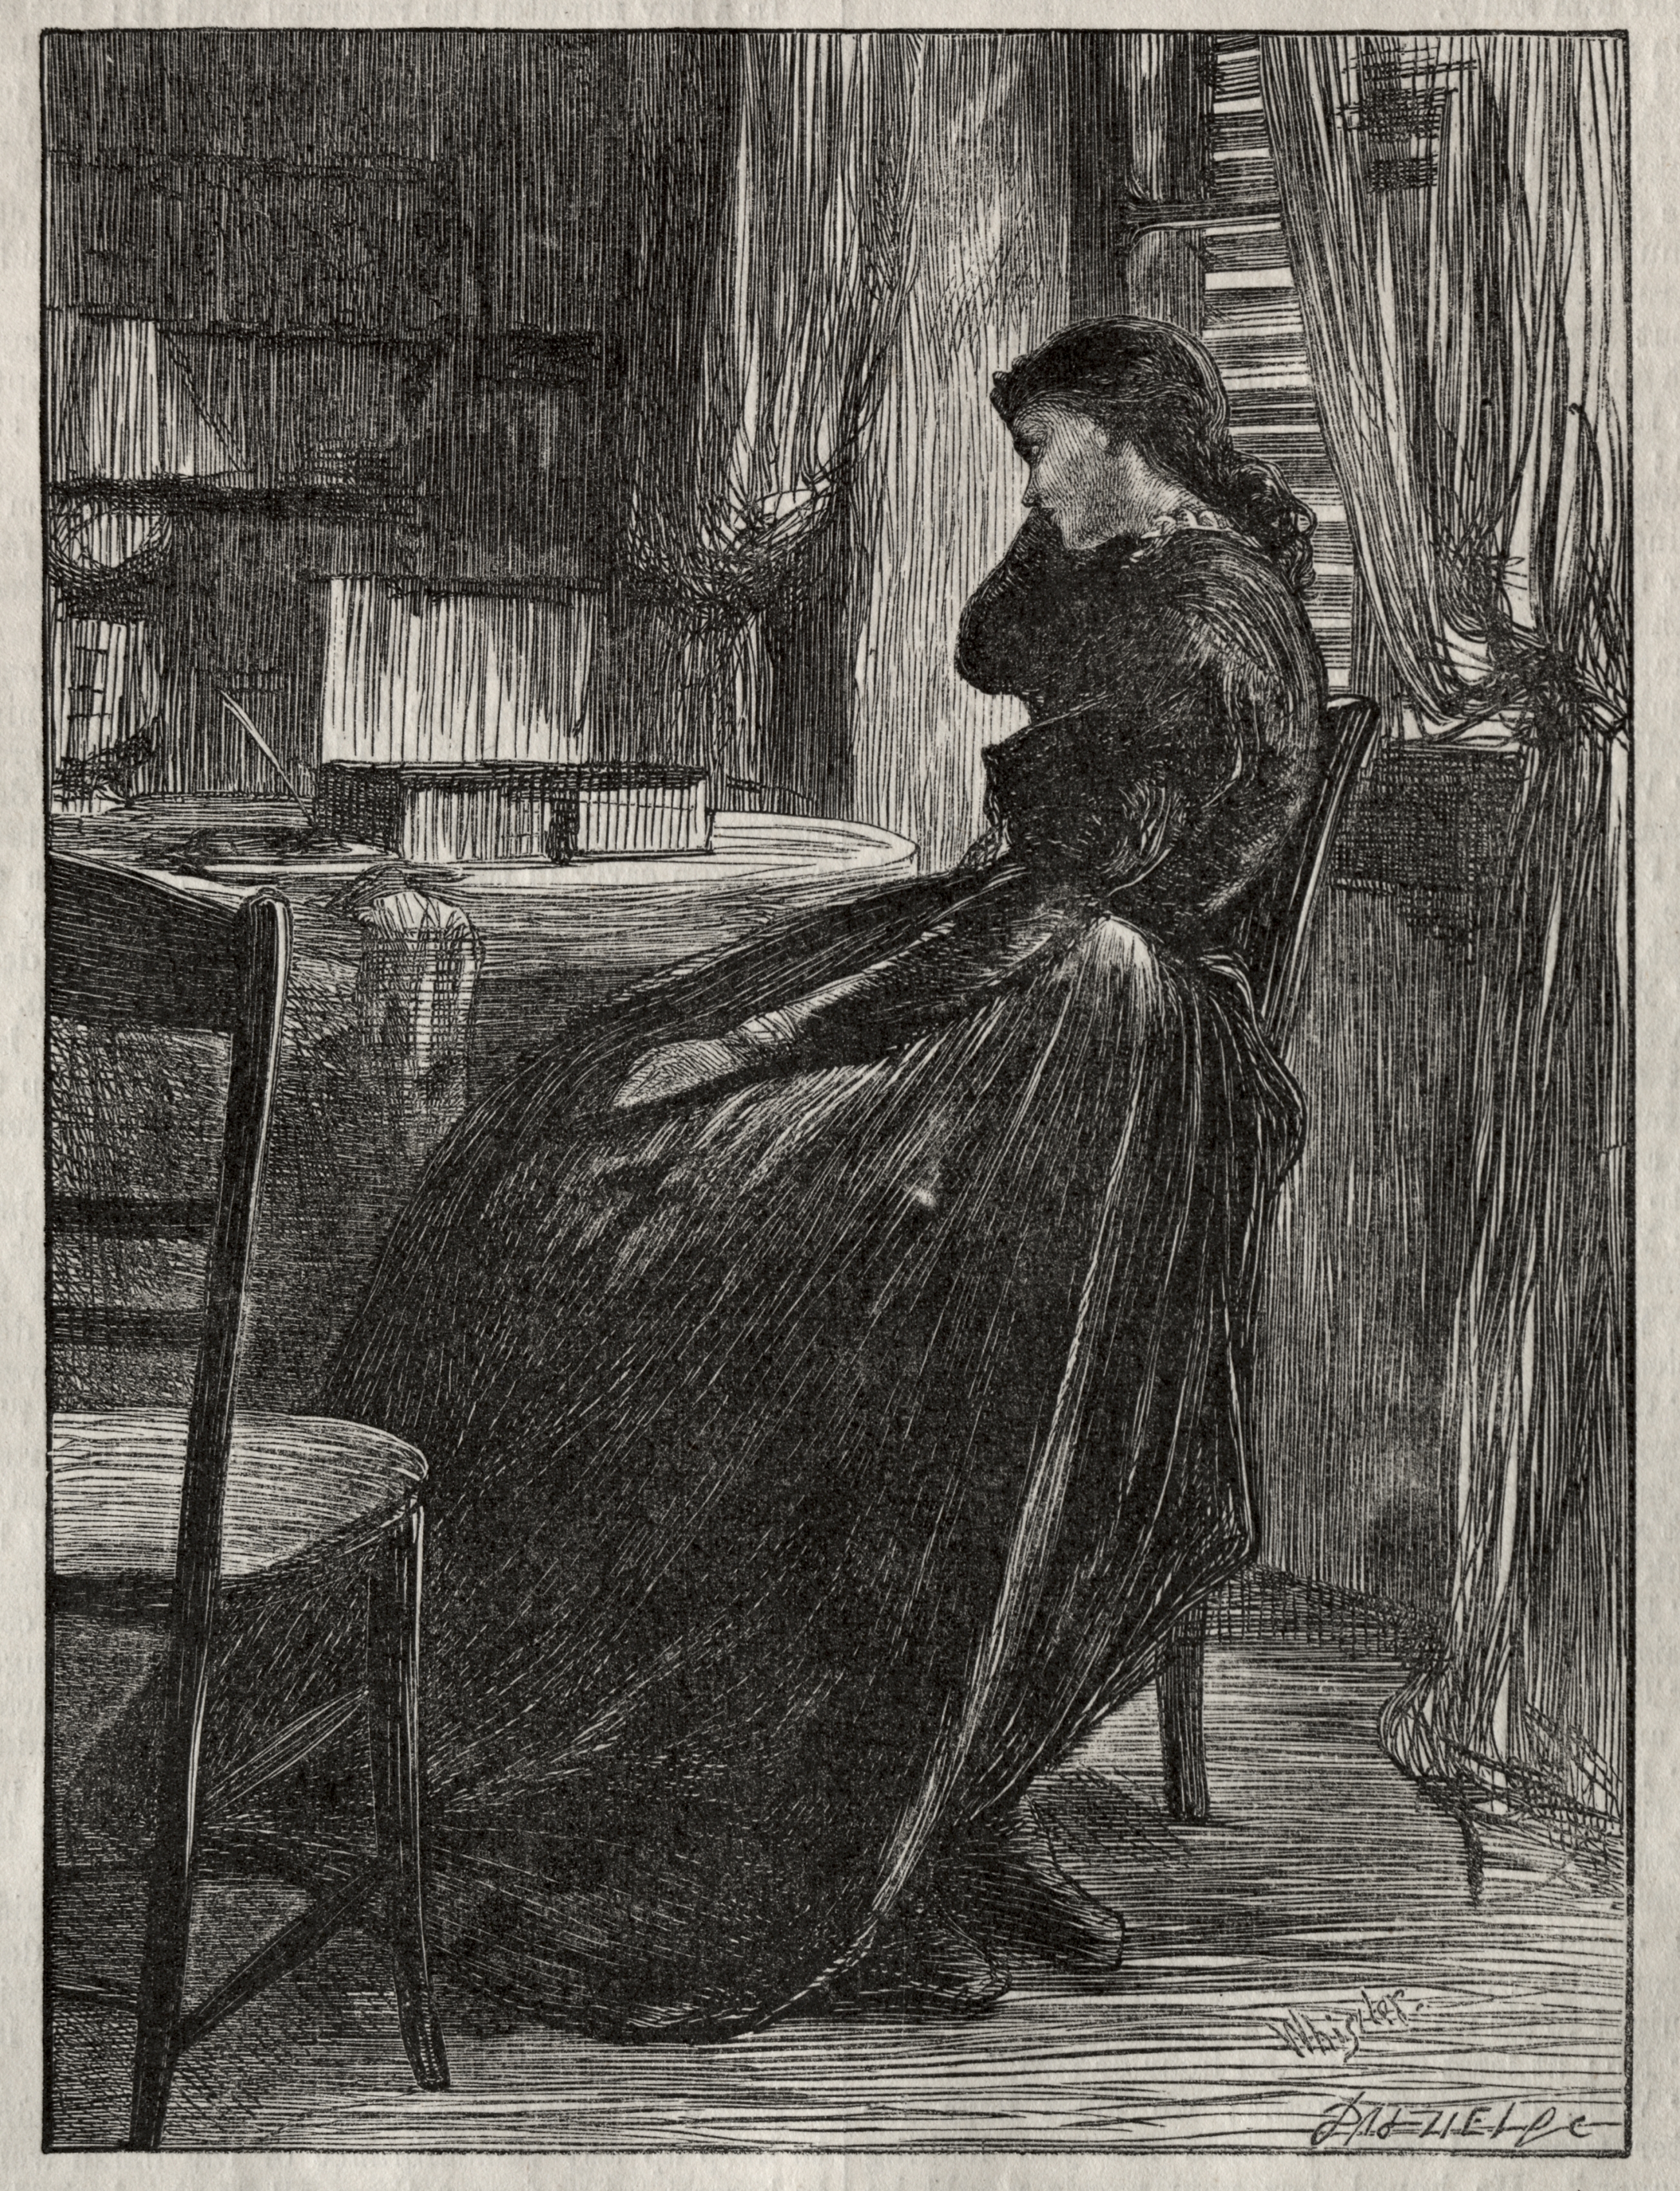 The Trial Sermon, Joanna Douglas at Her Desk